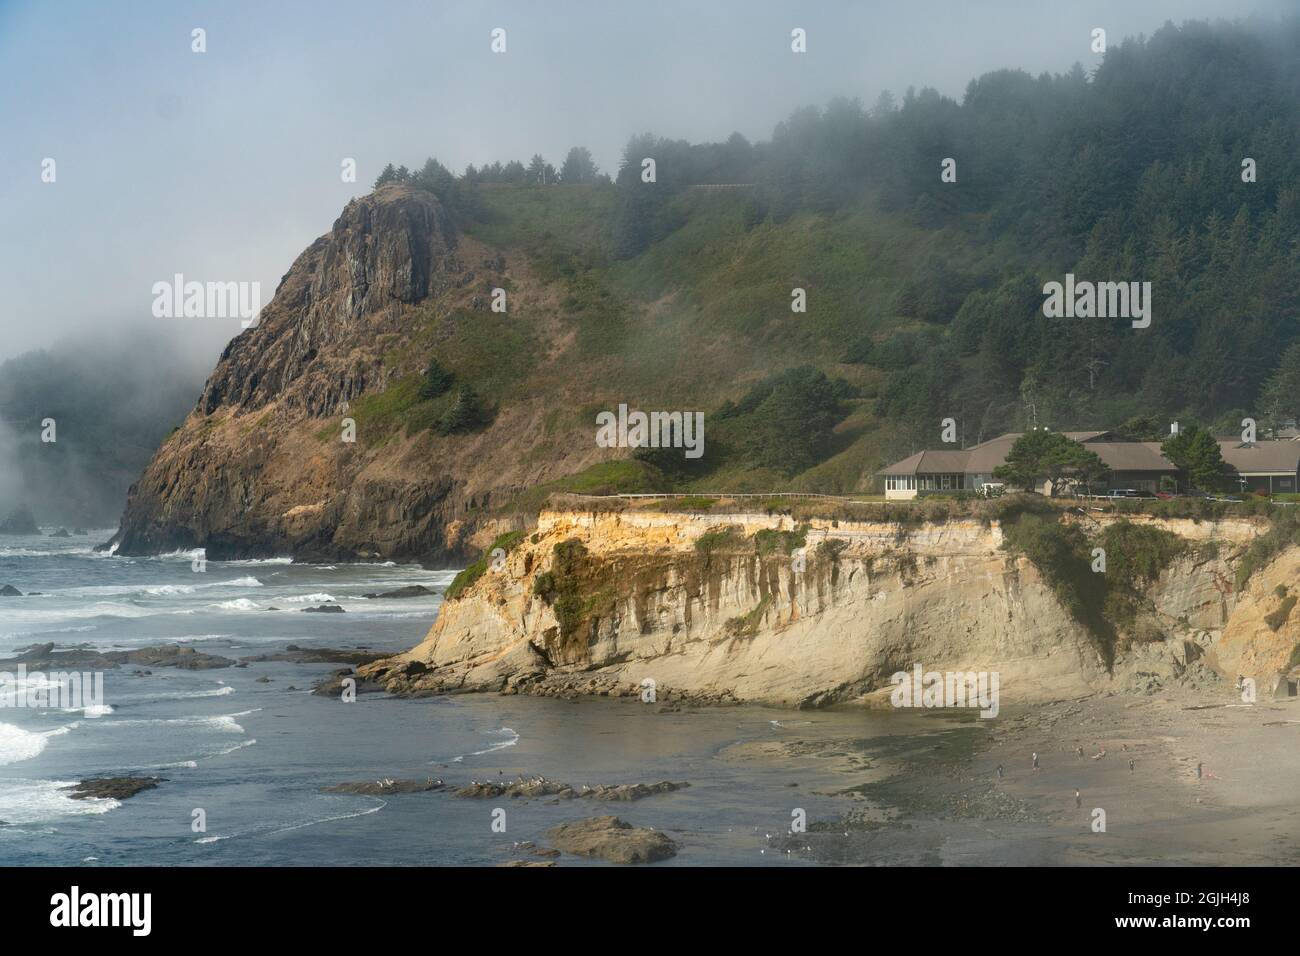 Le promontori resistono alle onde sulla costa dell'Oregon, USA. L'alto è costituito da basalto; quello inferiore presenta arenaria inclinata sotto una terrazza marina. Foto Stock